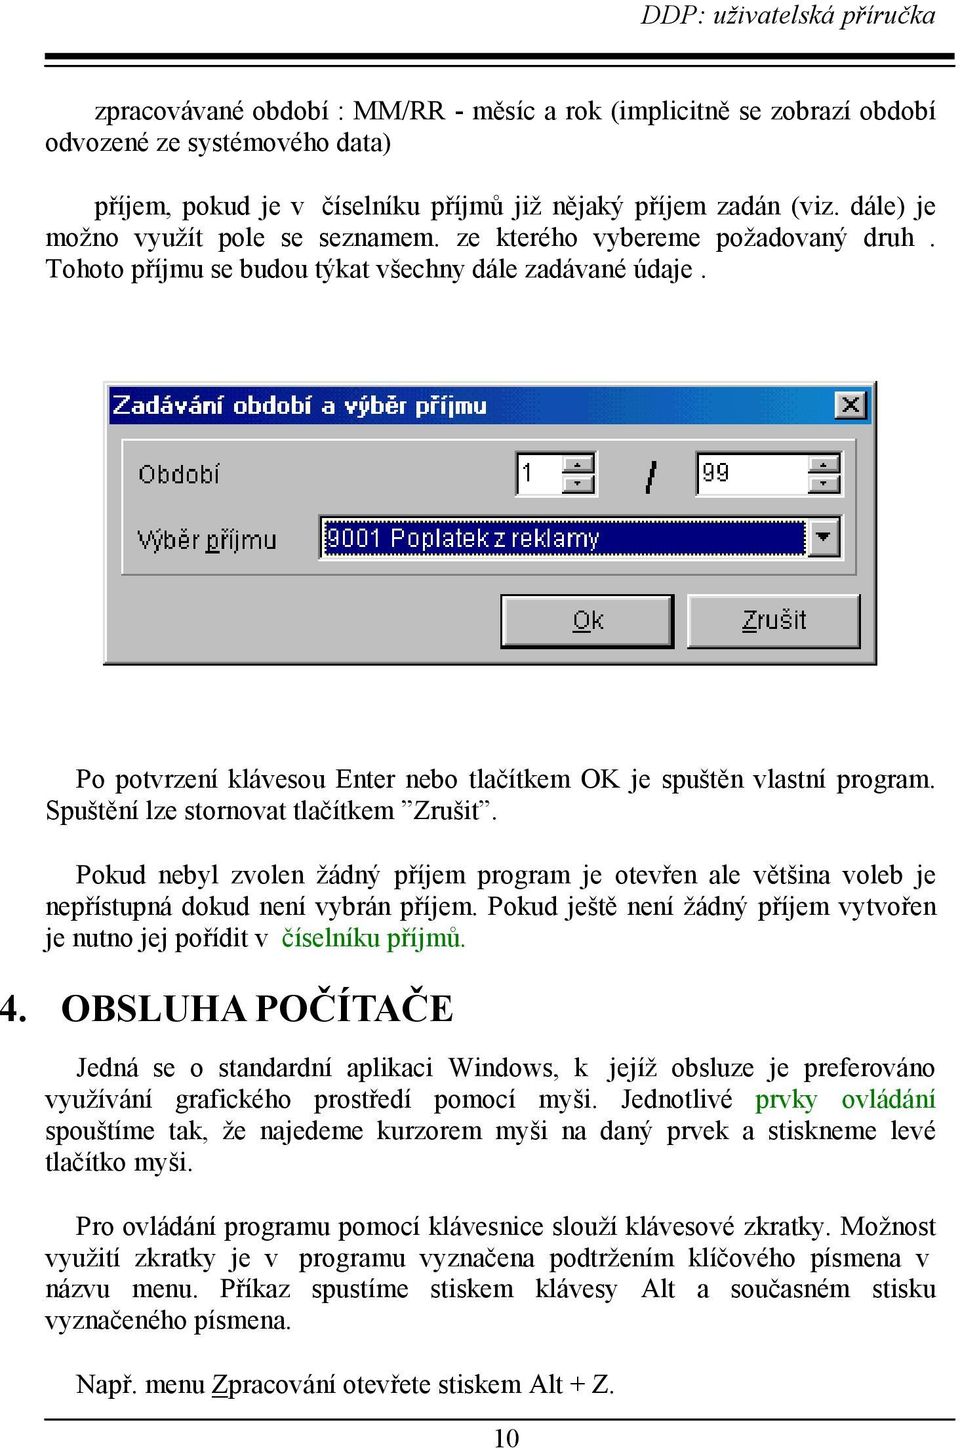 Po potvrzení klávesou Enter nebo tlačítkem OK je spuštěn vlastní program. Spuštění lze stornovat tlačítkem Zrušit.